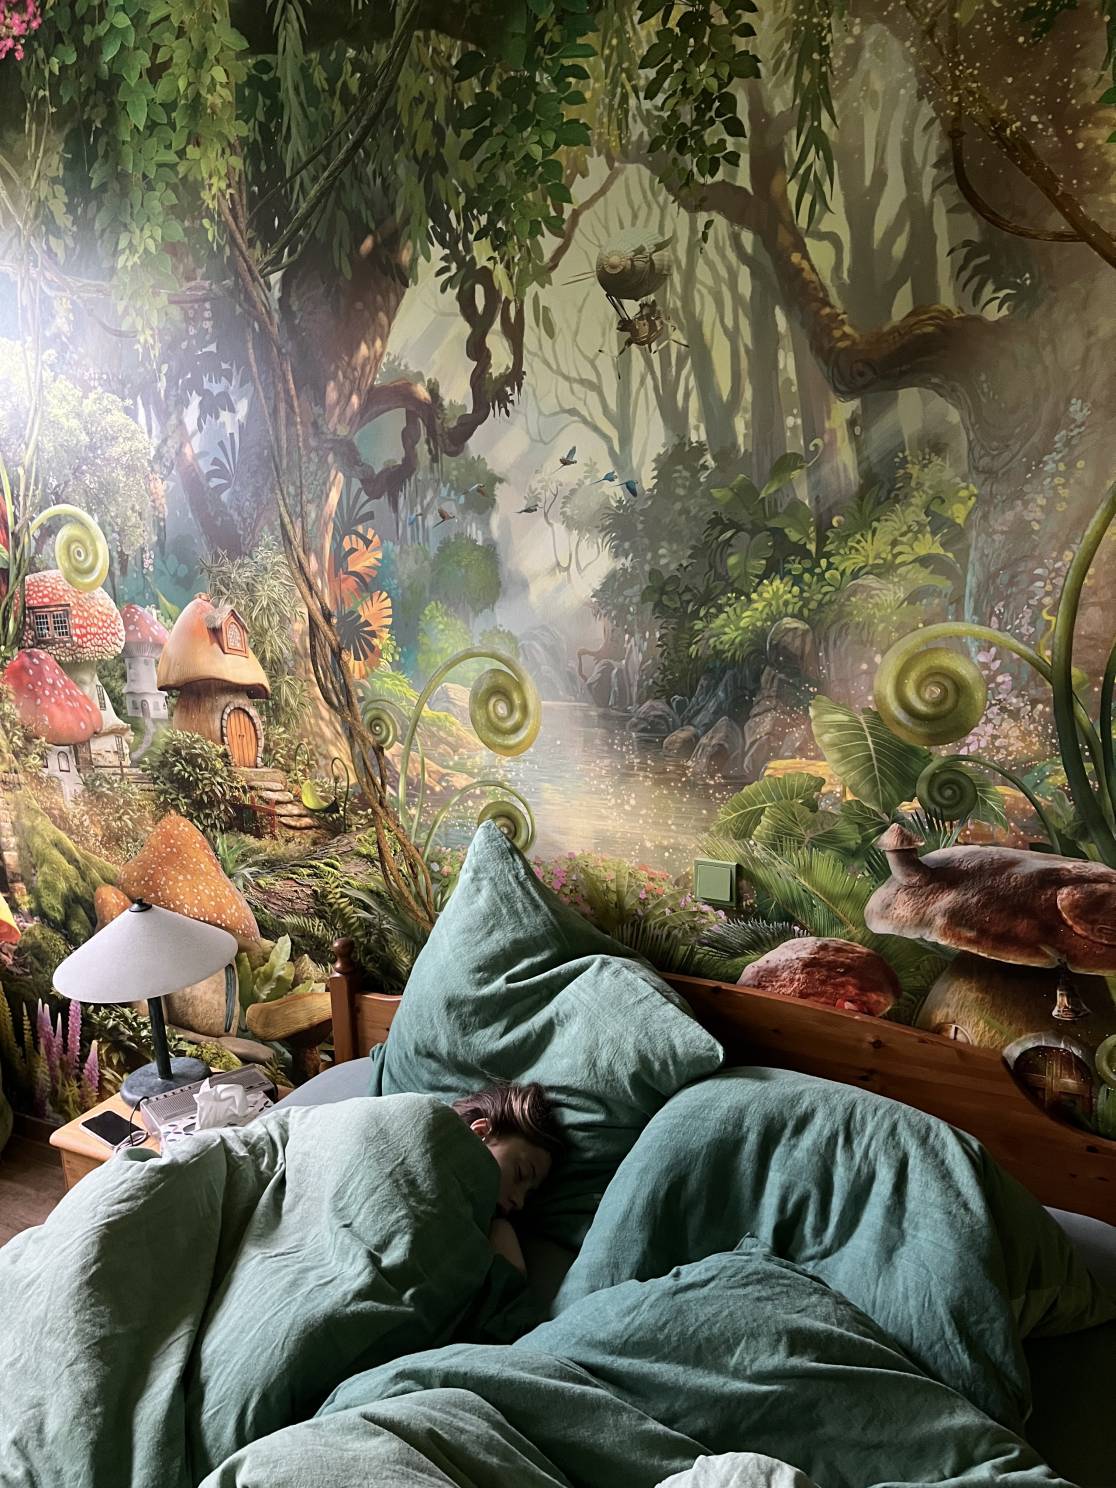 schlafendes Kind unter Bettdecken im Schlafzimmer der Ferienwohnung Alpakahof in Rambow (Plattenburg, Prignitz) mit Blick auf die bemalte Dschungelwand hinter dem Bett mit Wechselschalter und Nachttisch